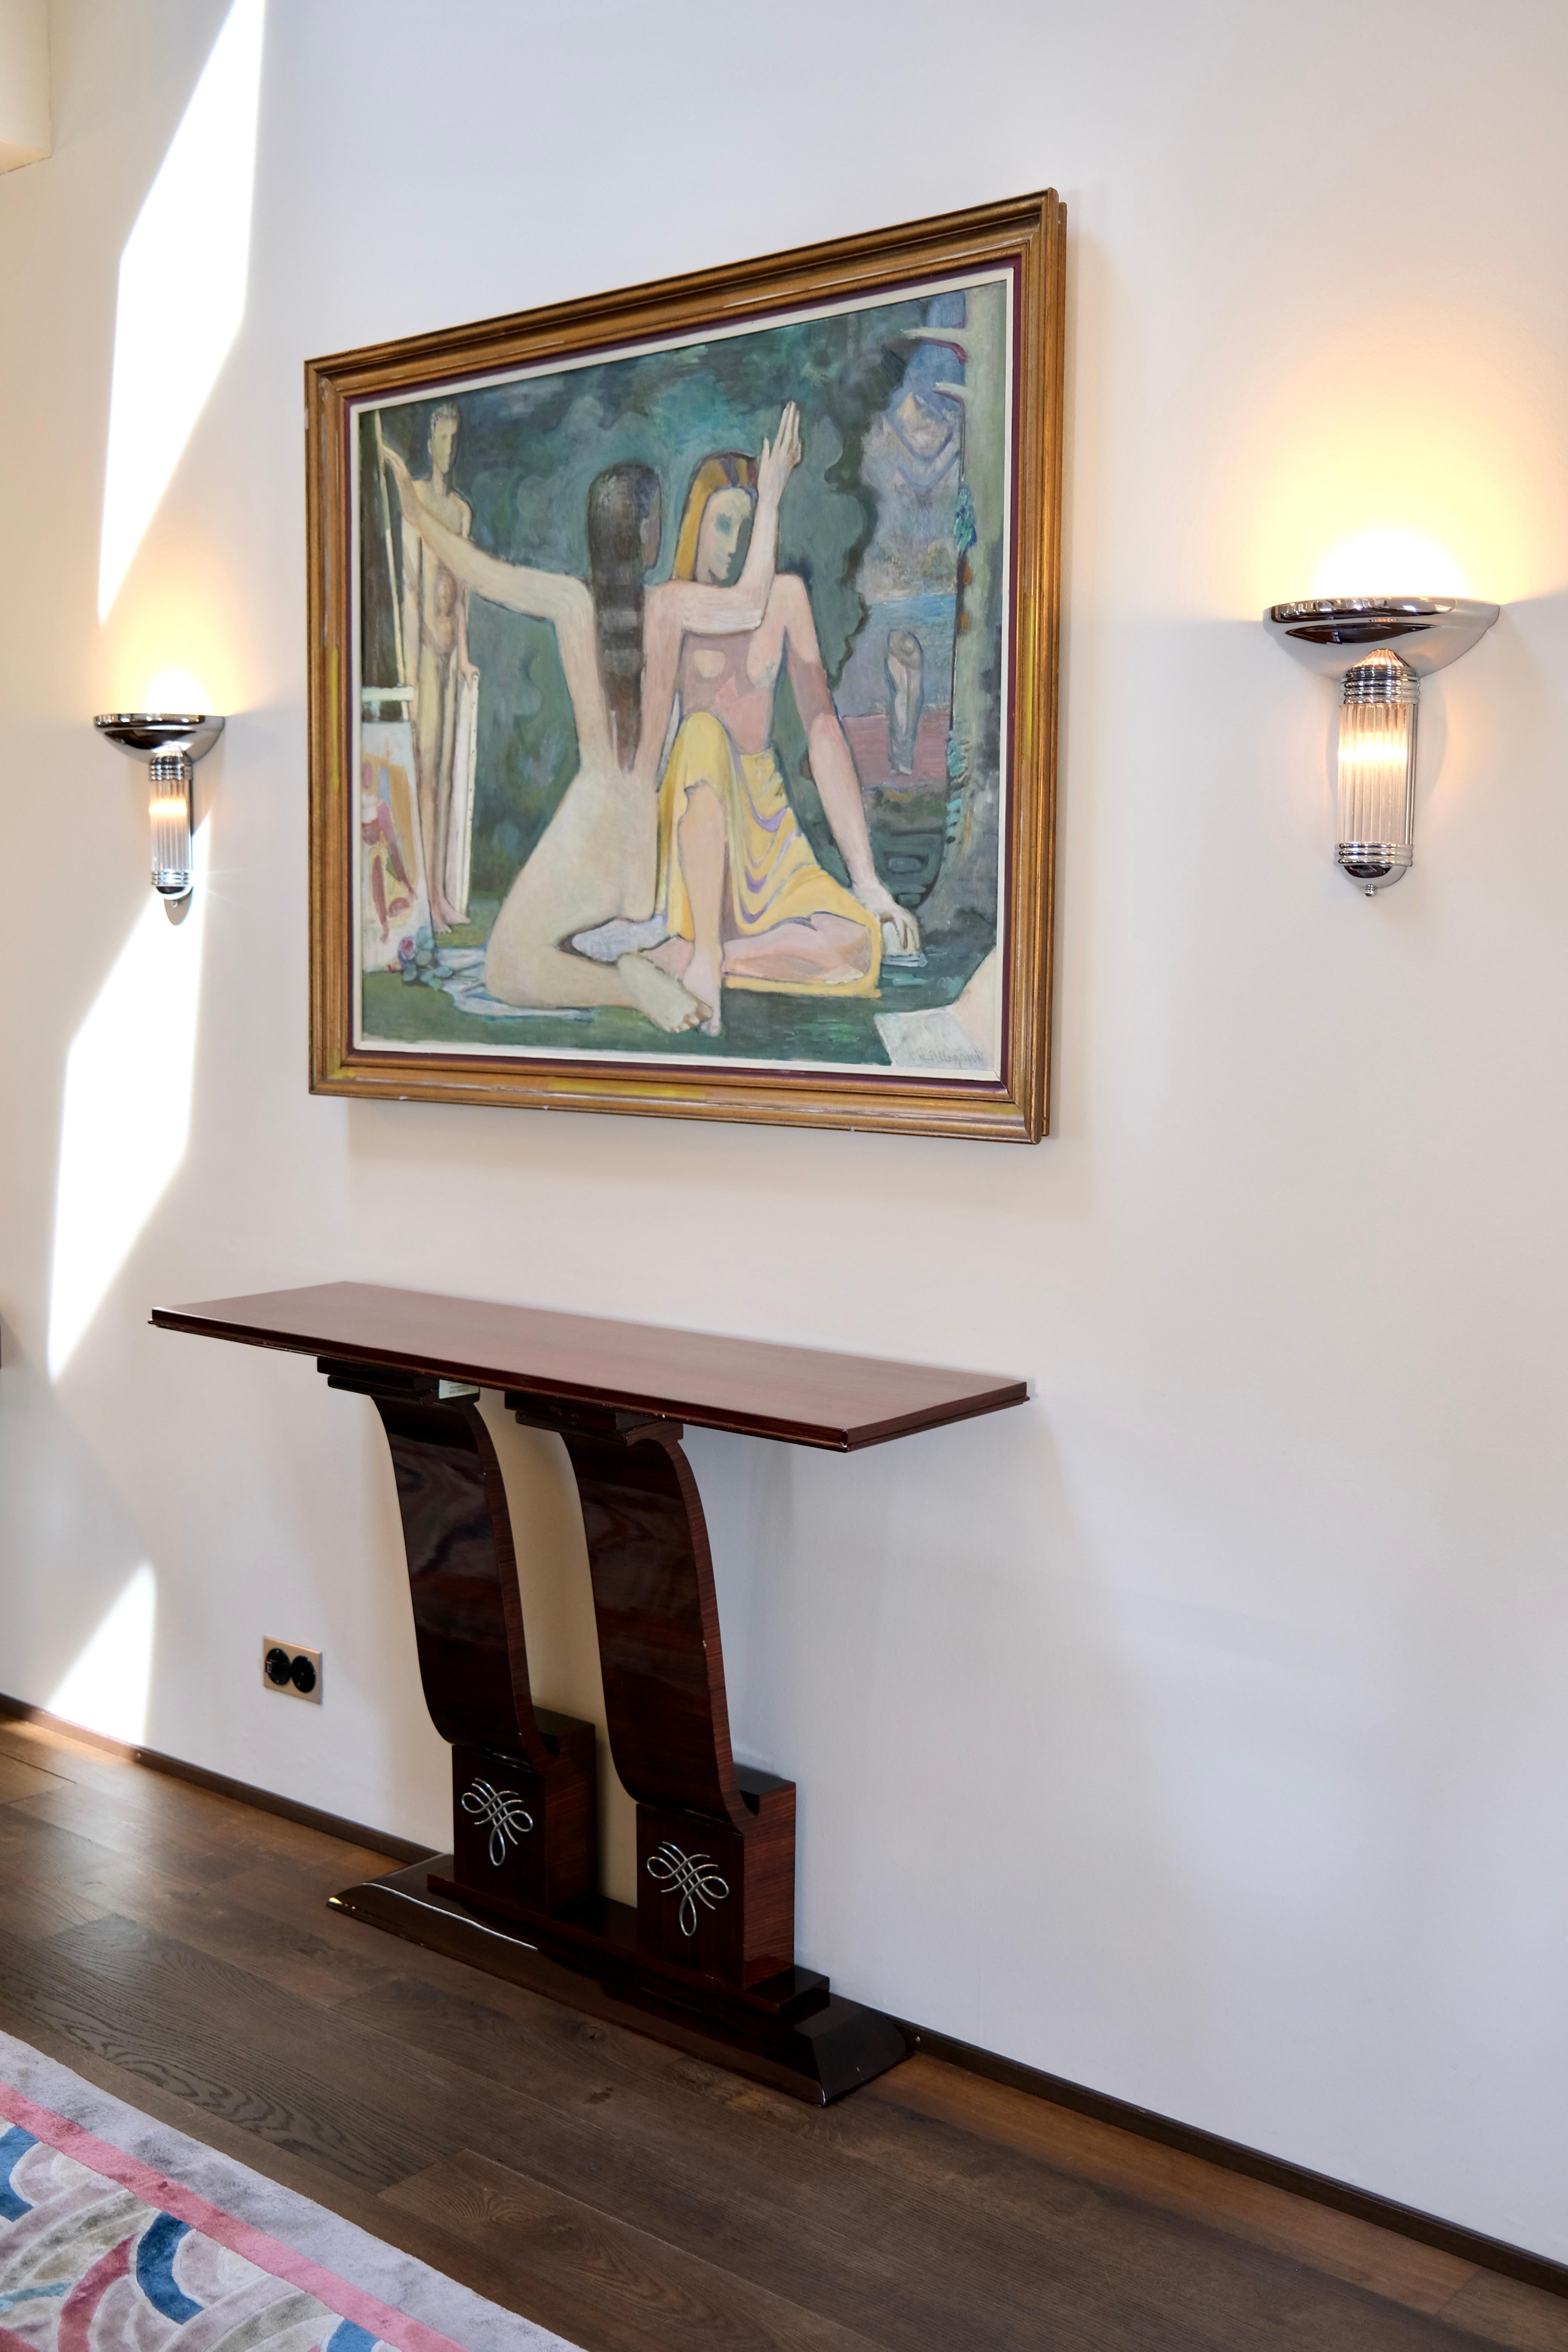 Konsolentisch mit vernickelten Metallen auf zwei Stangen
Mahagoni, hochglanzlackiert 

Original Art Deco, Frankreich 1930er Jahre

Abmessungen:
Breite: 130 cm
Höhe: 94 cm
Tiefe: 37 cm